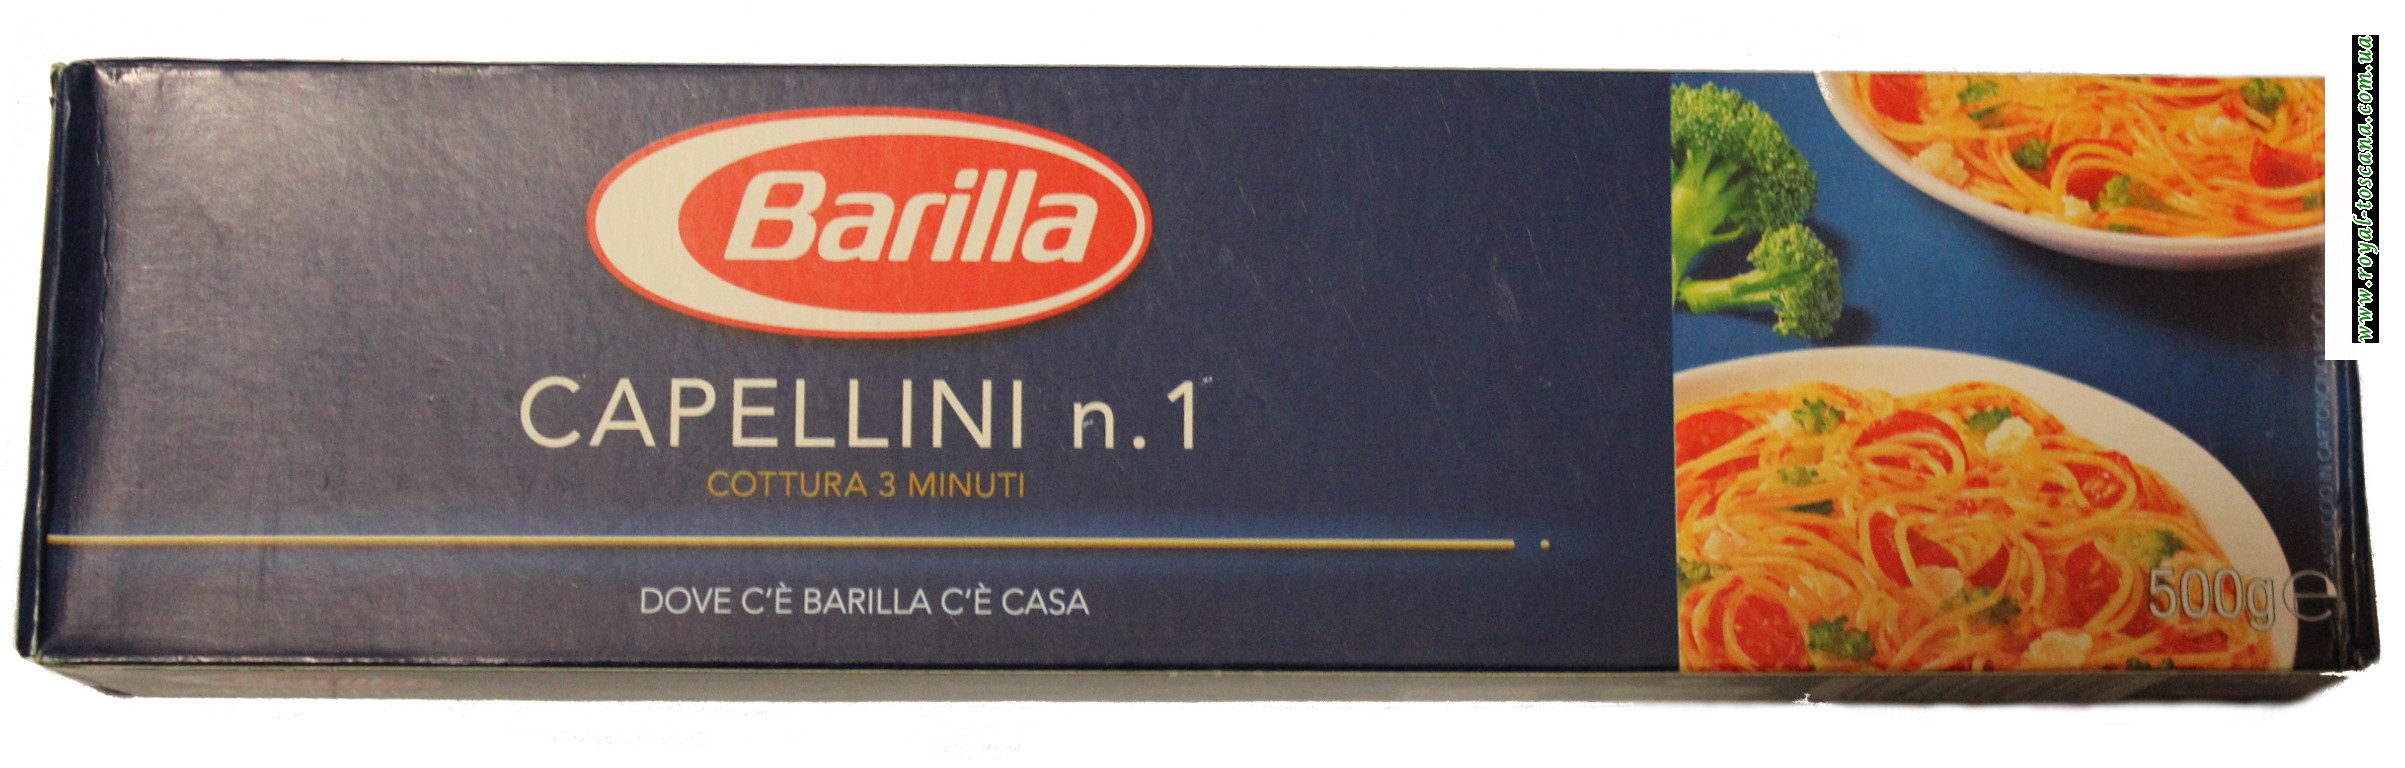 Макароны Barilla Capellini n.1